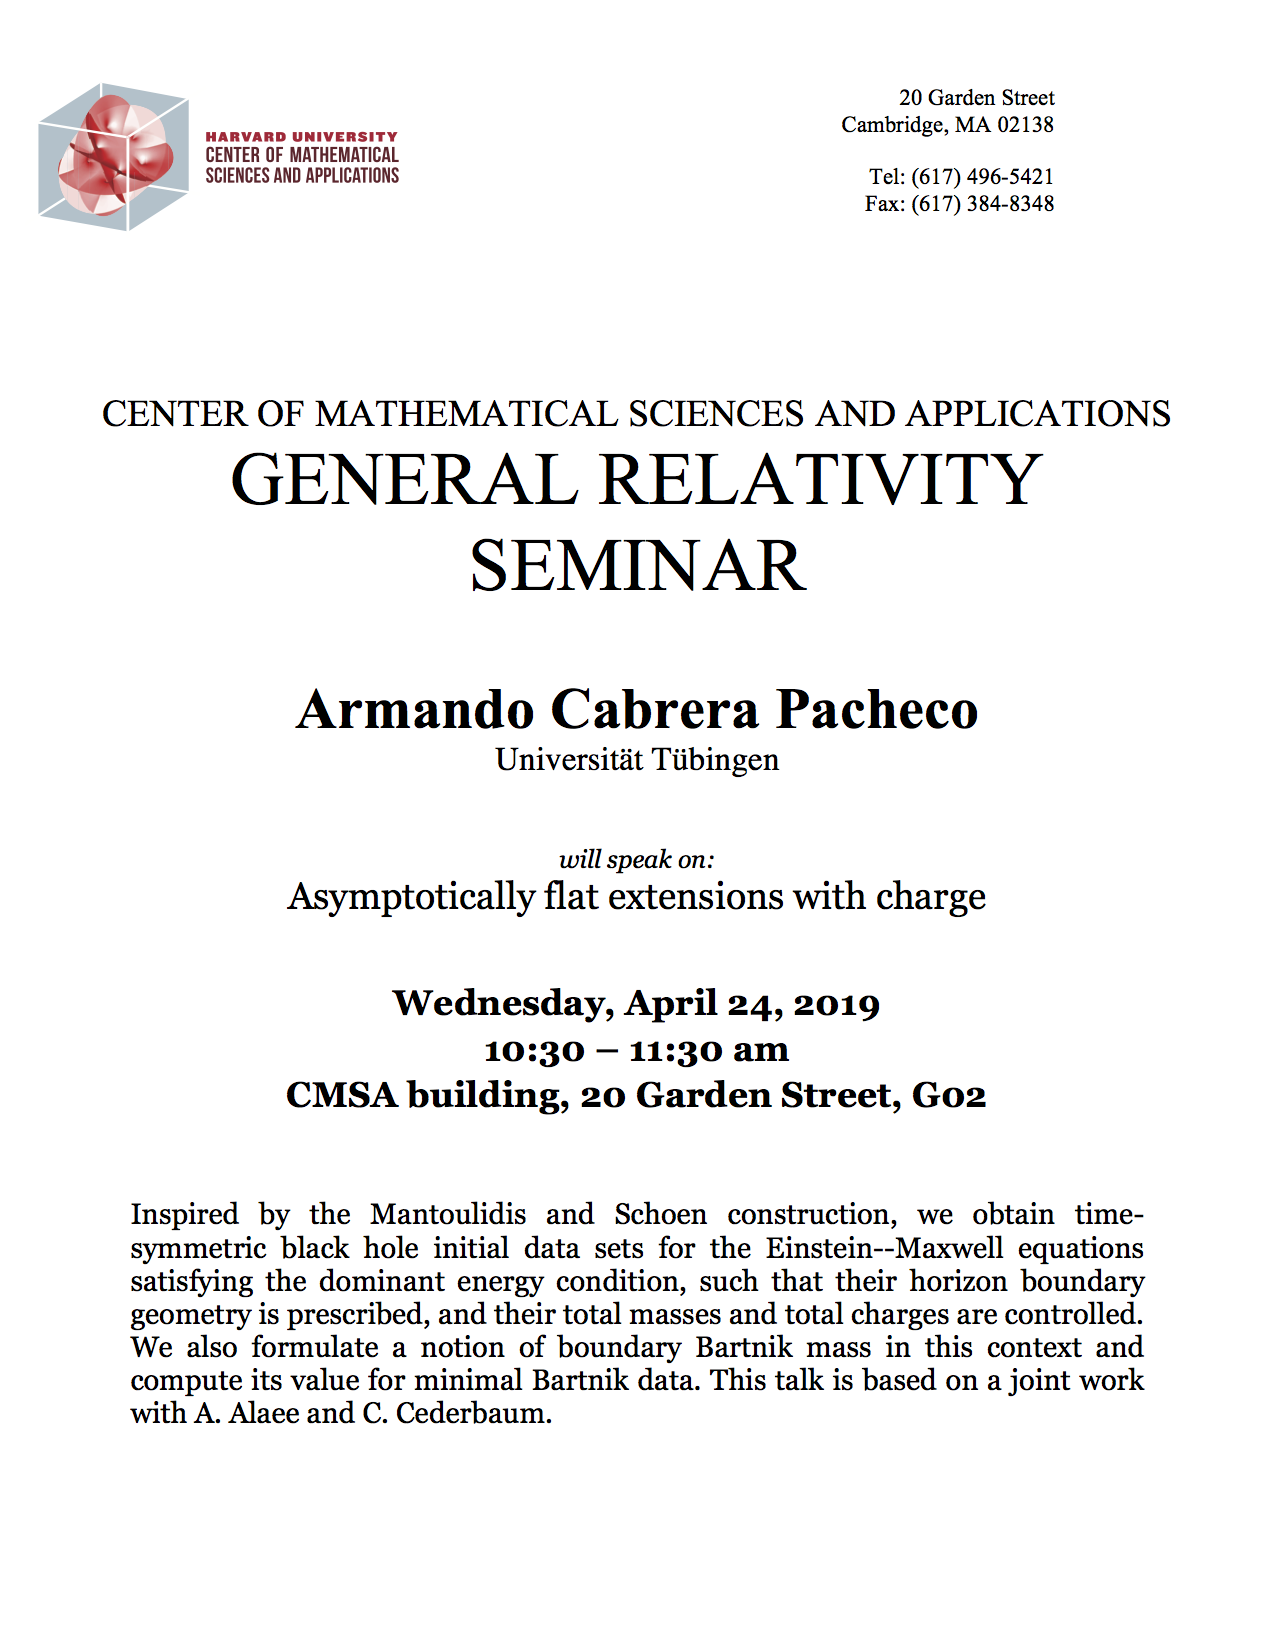 4/24/2019 General Relativity Seminar